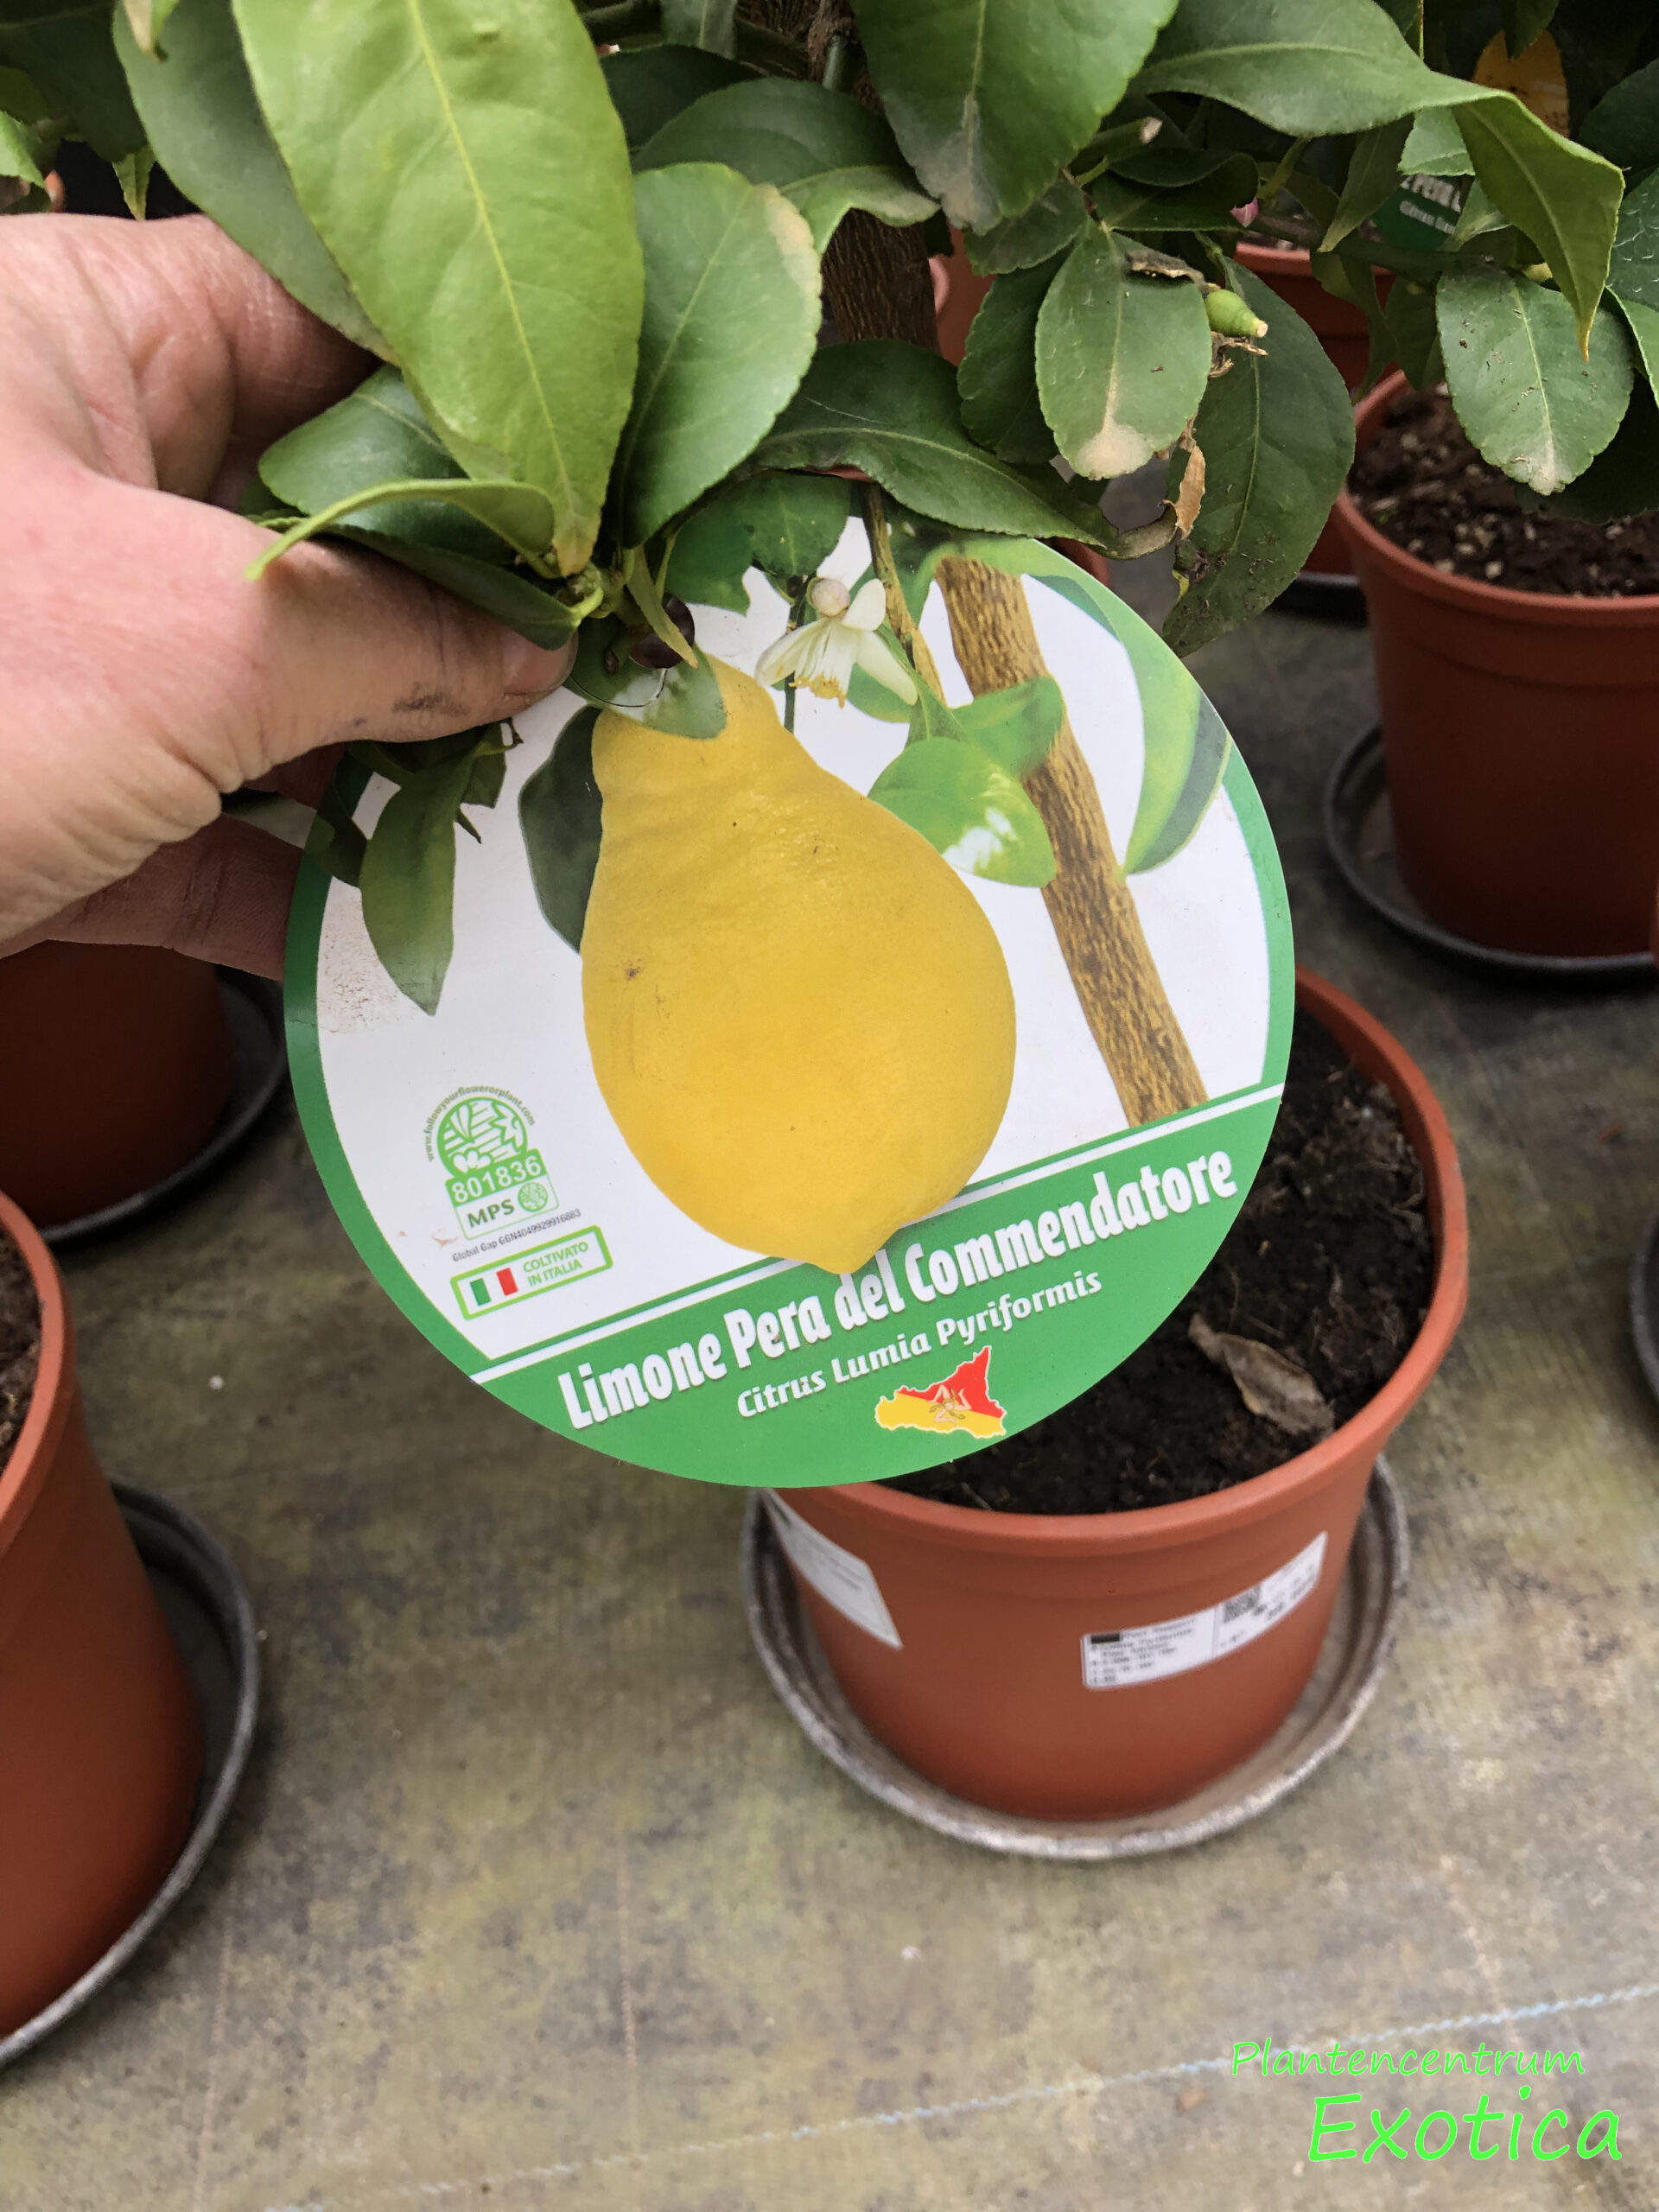 Citrus × lumia ‘pyriformis – Peer Citroen